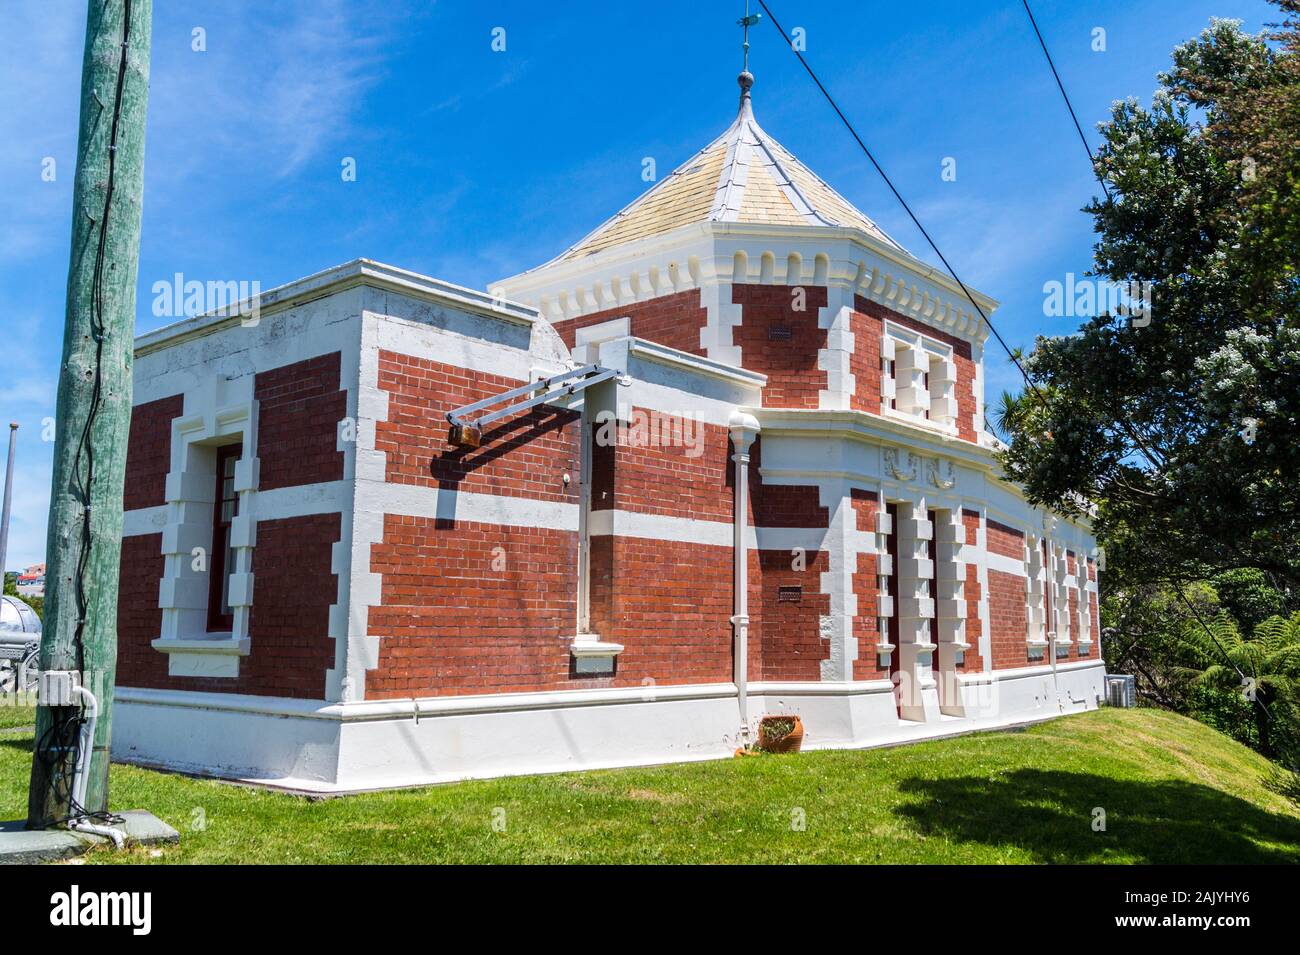 Observatoire fédéral, par John Campbell, 1907, style architectural baroque édouardien, jardin botanique, Wellington, Nouvelle-Zélande Banque D'Images